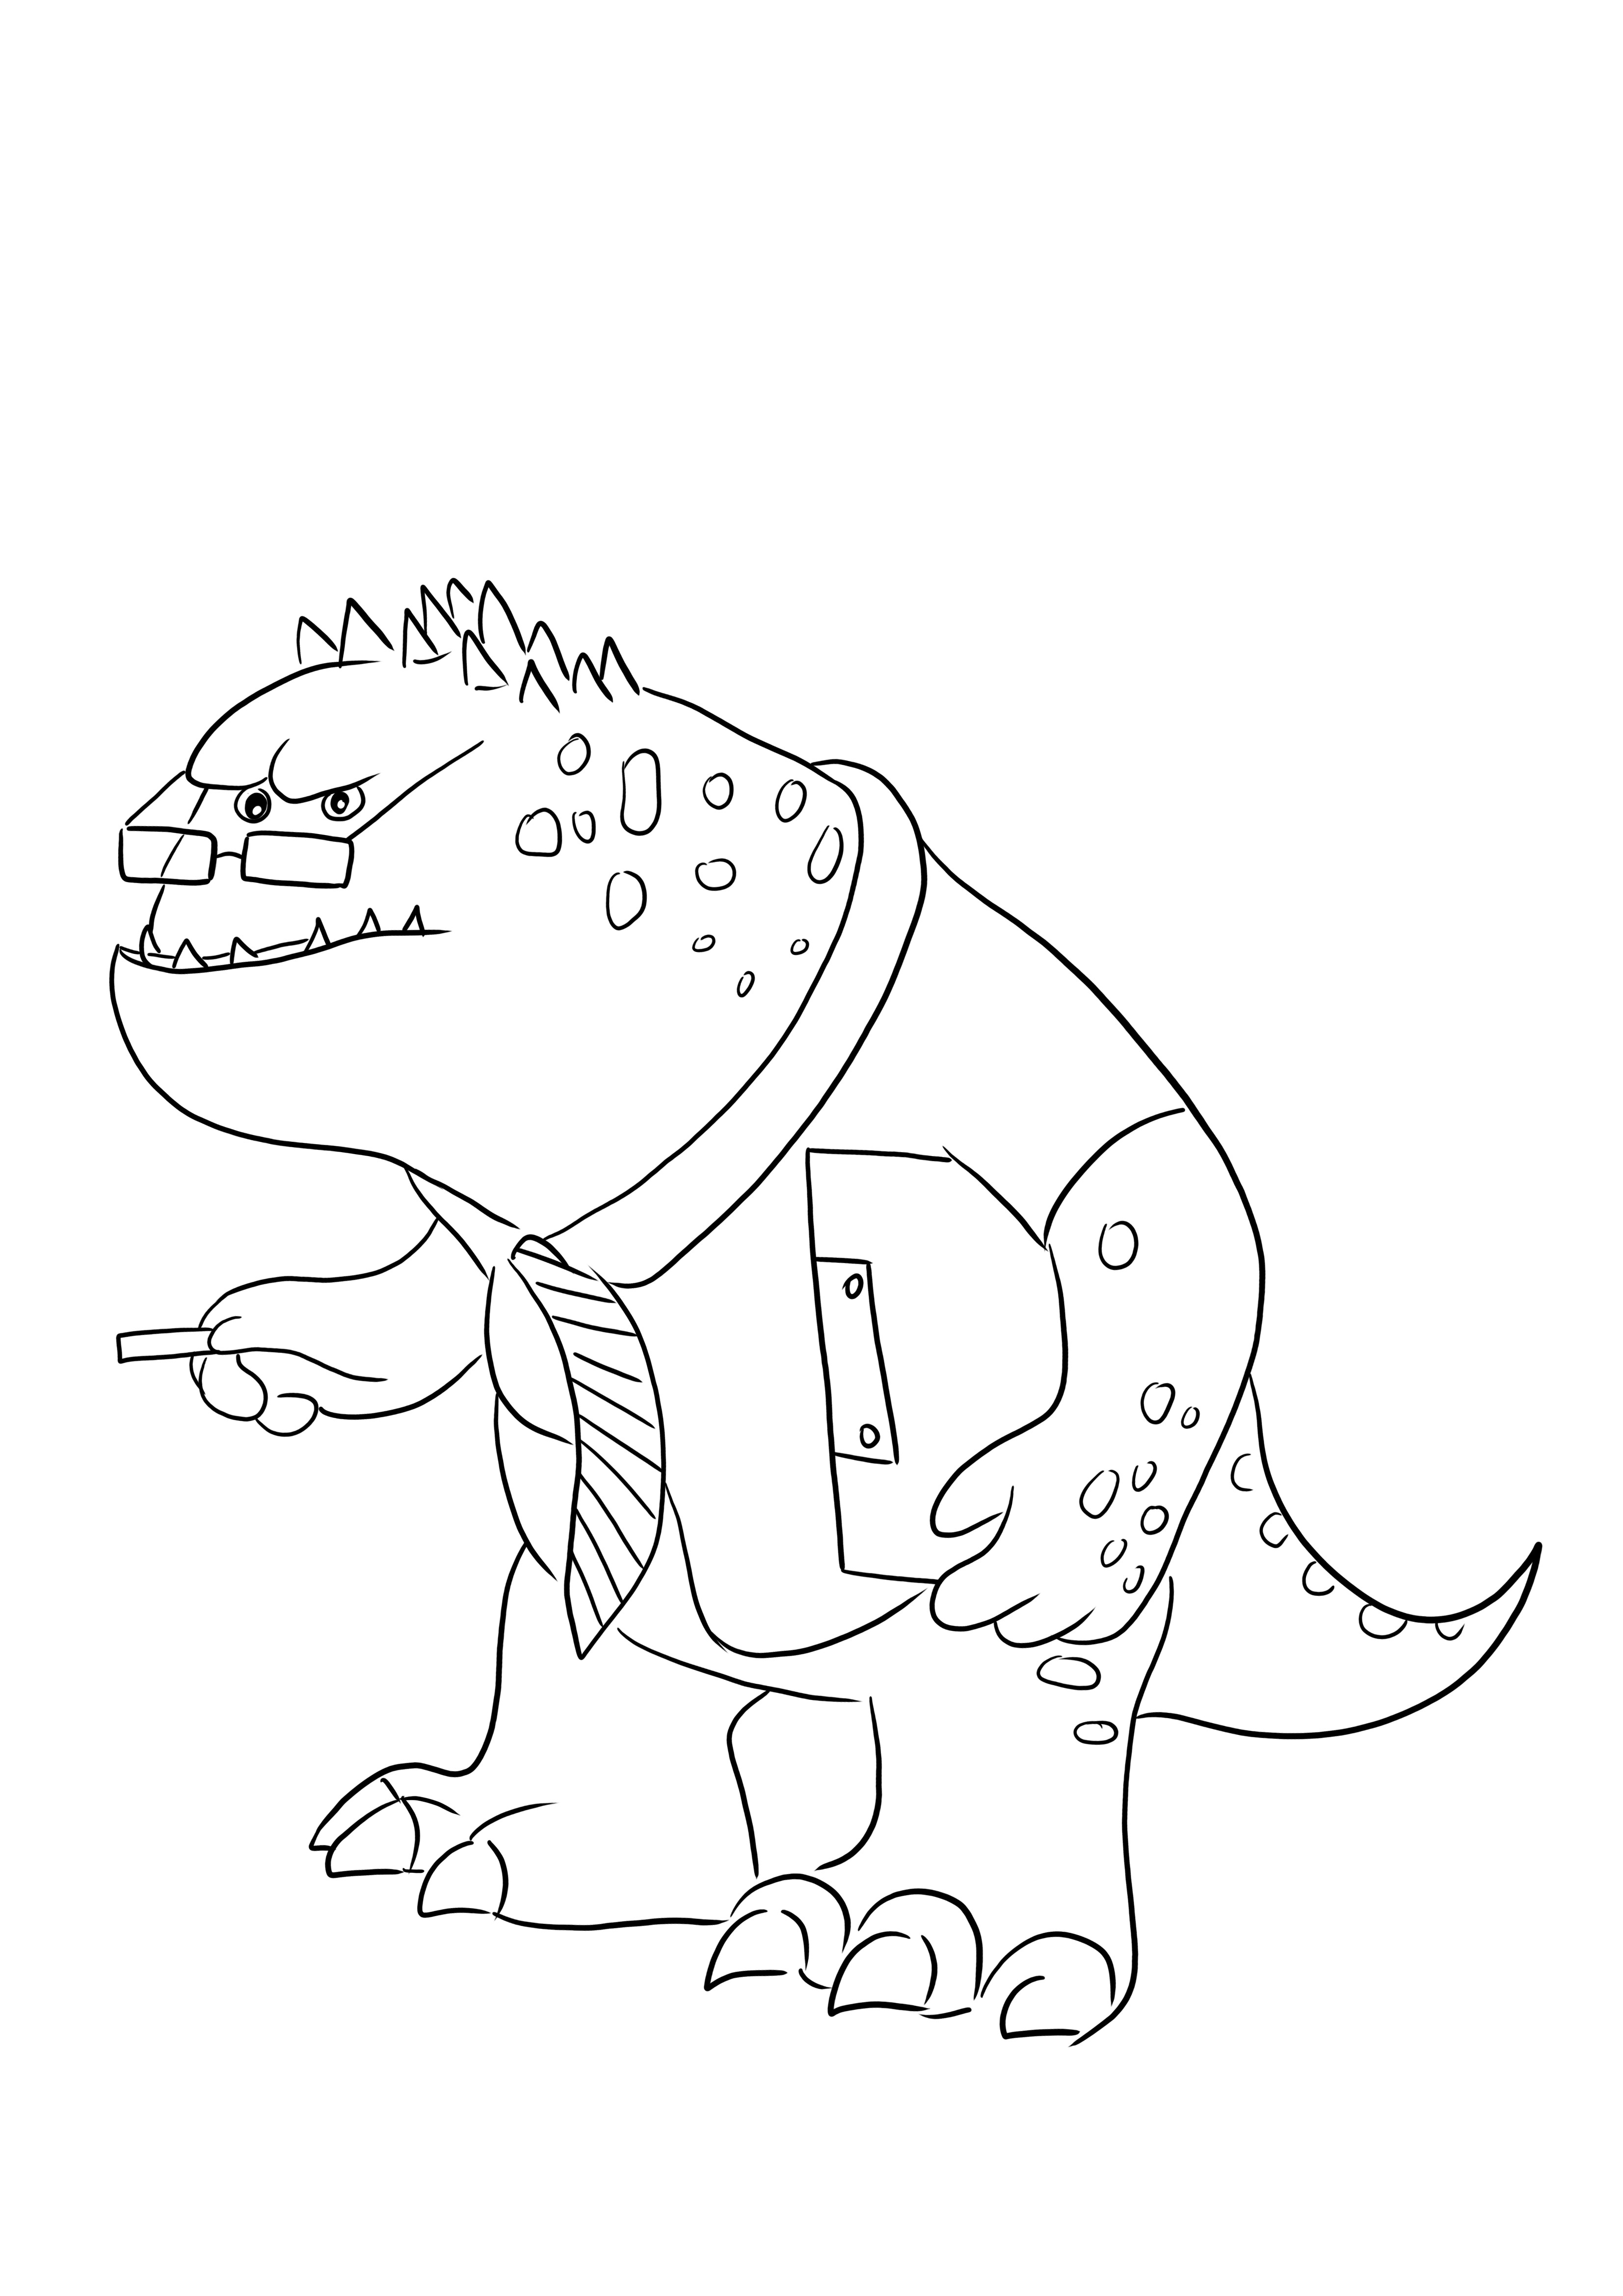 Strict Professor Knight-kolorowanka z zabawną postacią z Monsters Inc do pobrania za darmo